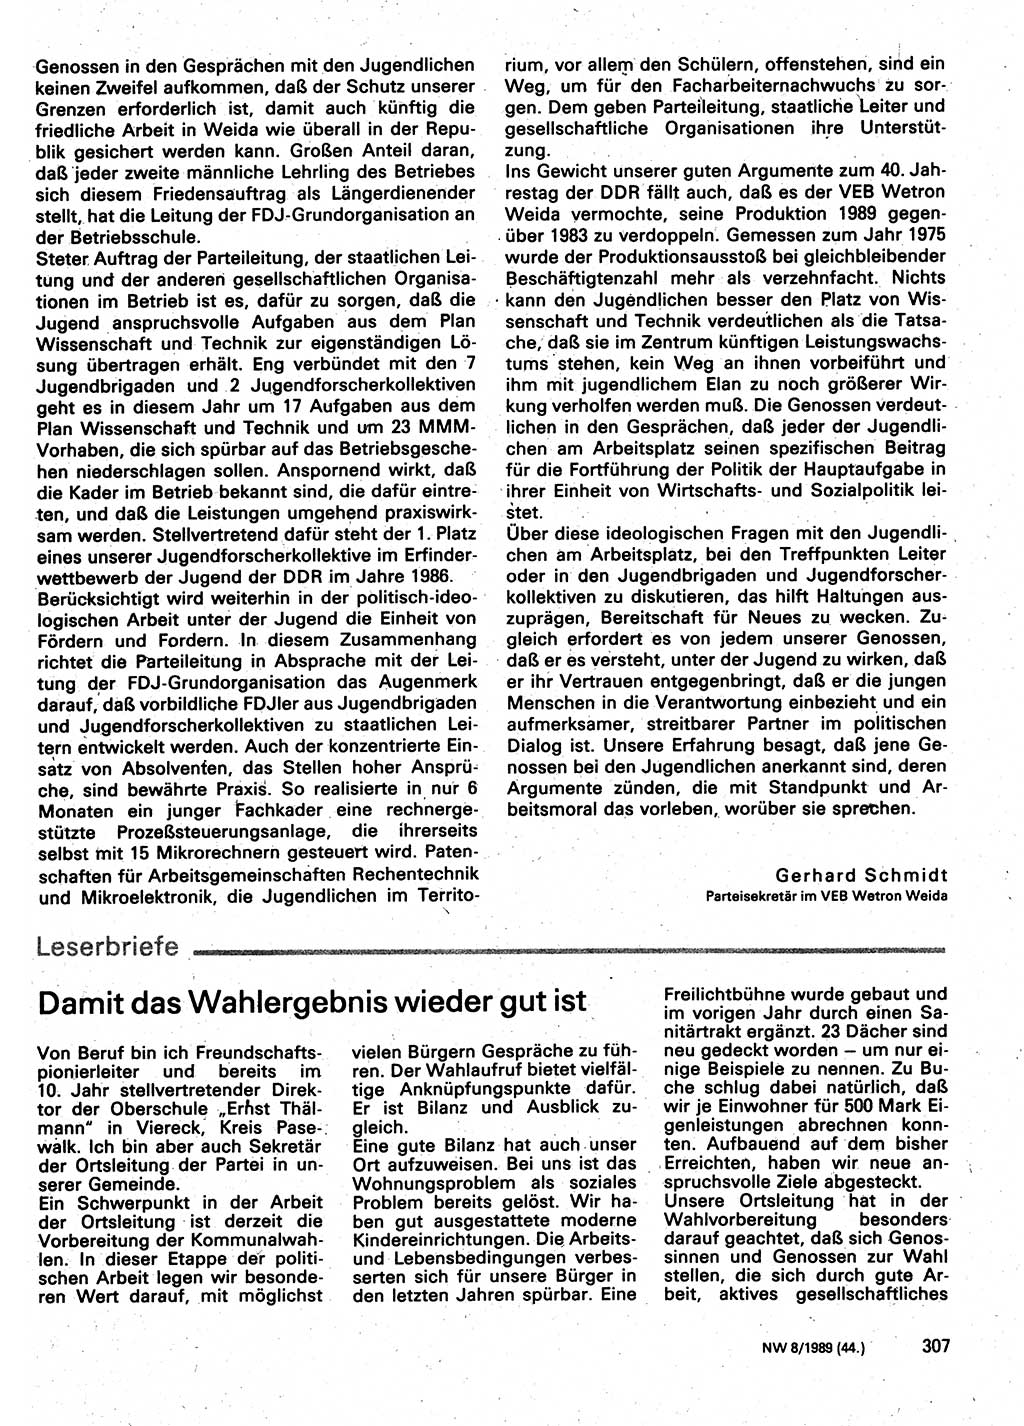 Neuer Weg (NW), Organ des Zentralkomitees (ZK) der SED (Sozialistische Einheitspartei Deutschlands) für Fragen des Parteilebens, 44. Jahrgang [Deutsche Demokratische Republik (DDR)] 1989, Seite 307 (NW ZK SED DDR 1989, S. 307)